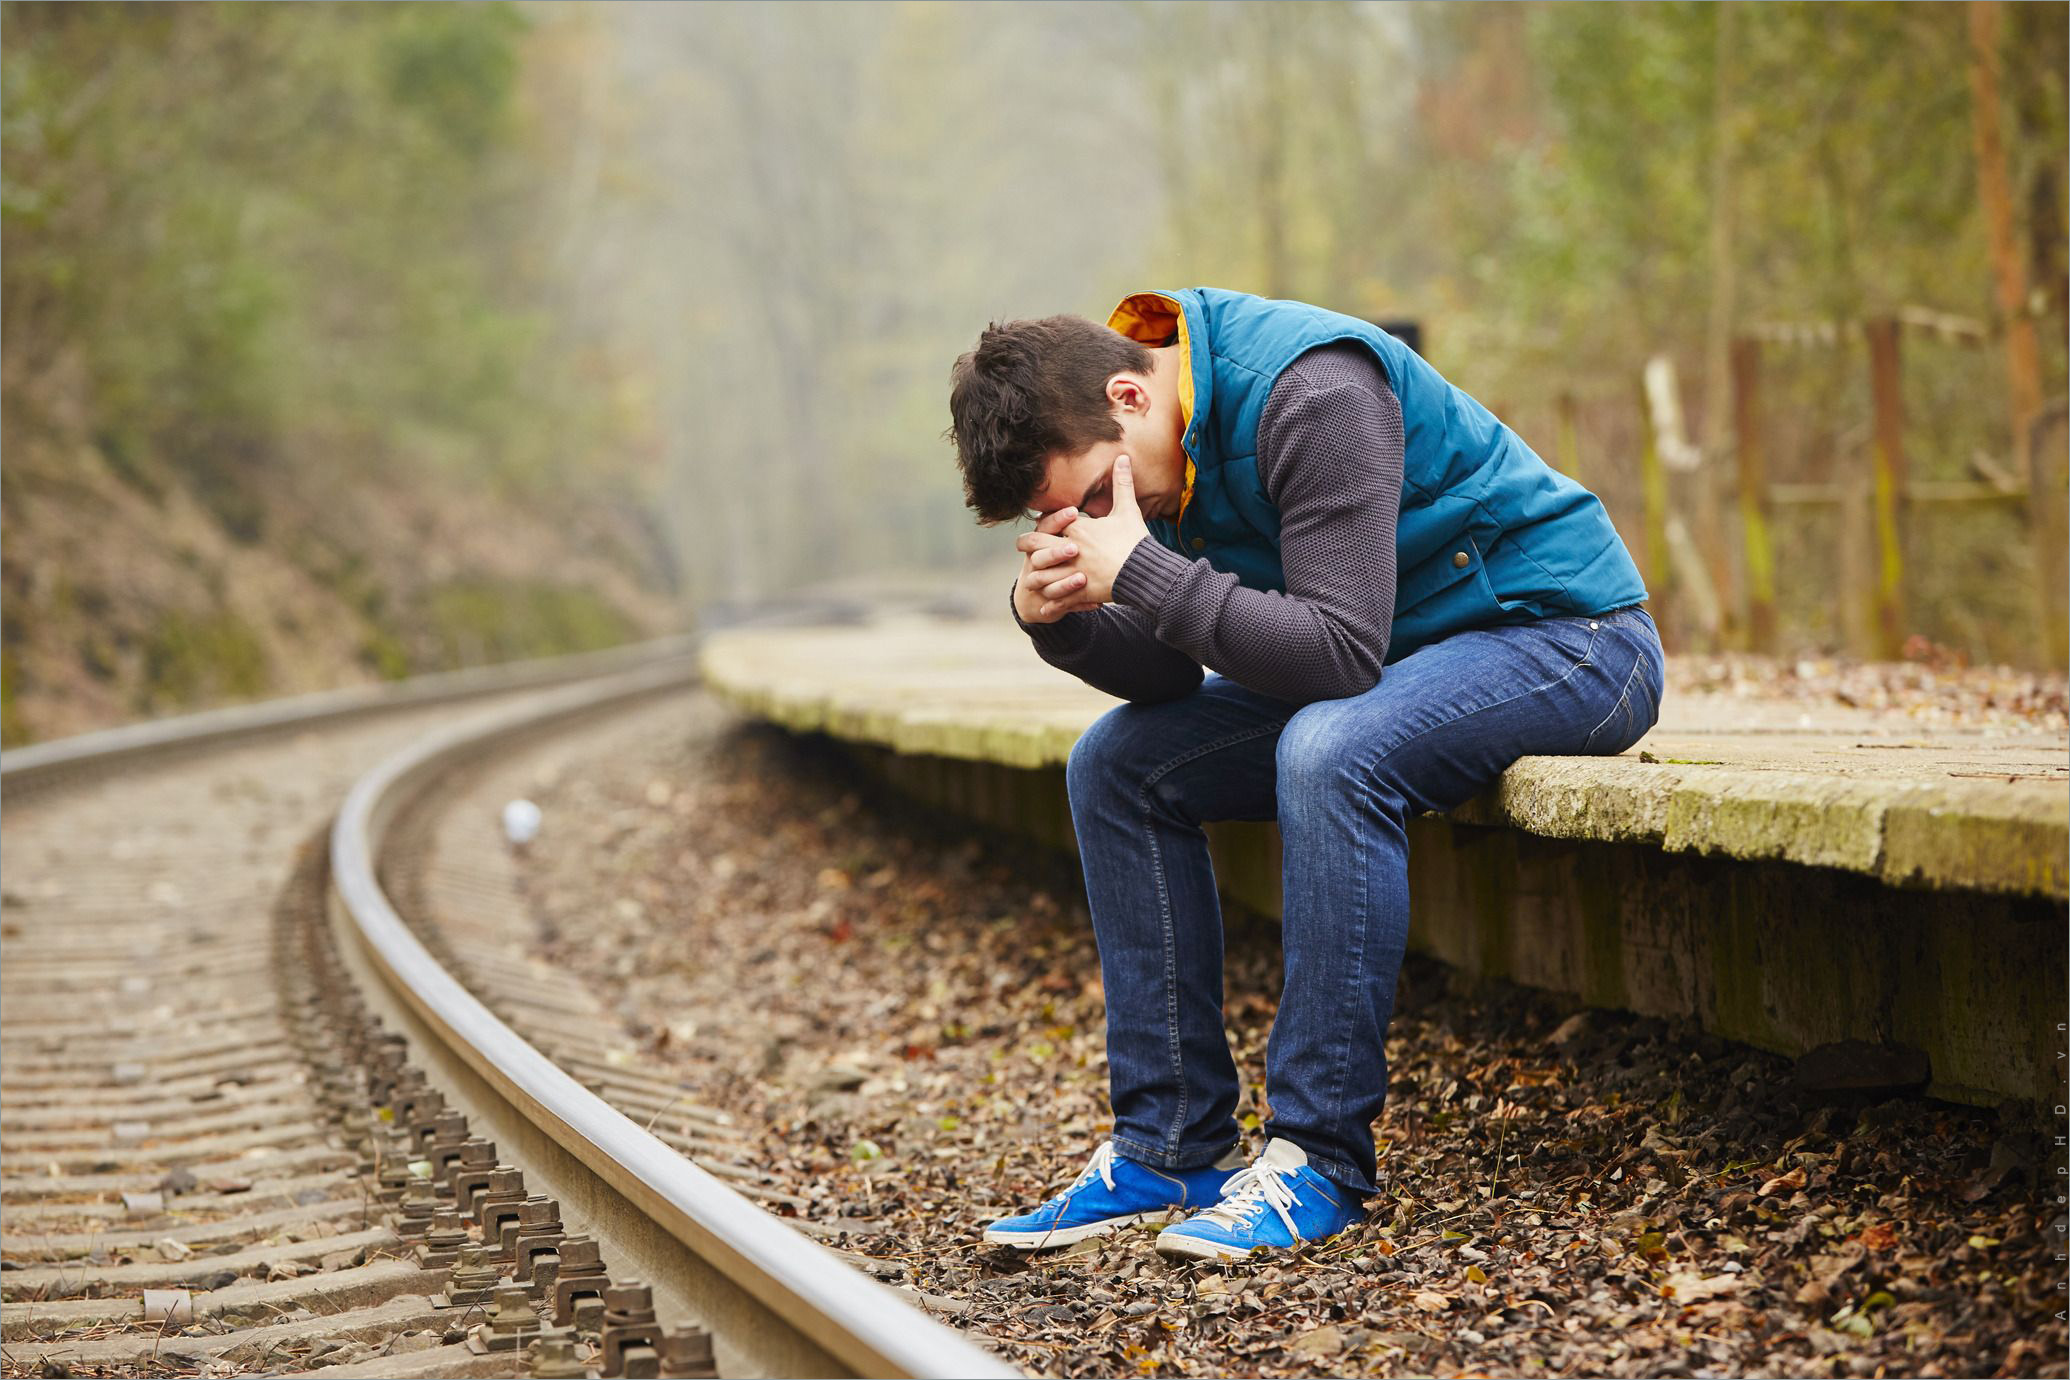 Con trai buồn khóc không phải là dấu hiệu yếu đuối, mà là cách để giải tỏa tất cả căng thẳng và tổn thương. Xem ngay hình ảnh này để cảm thấy bình an và sẵn sàng để vượt qua mọi khó khăn.